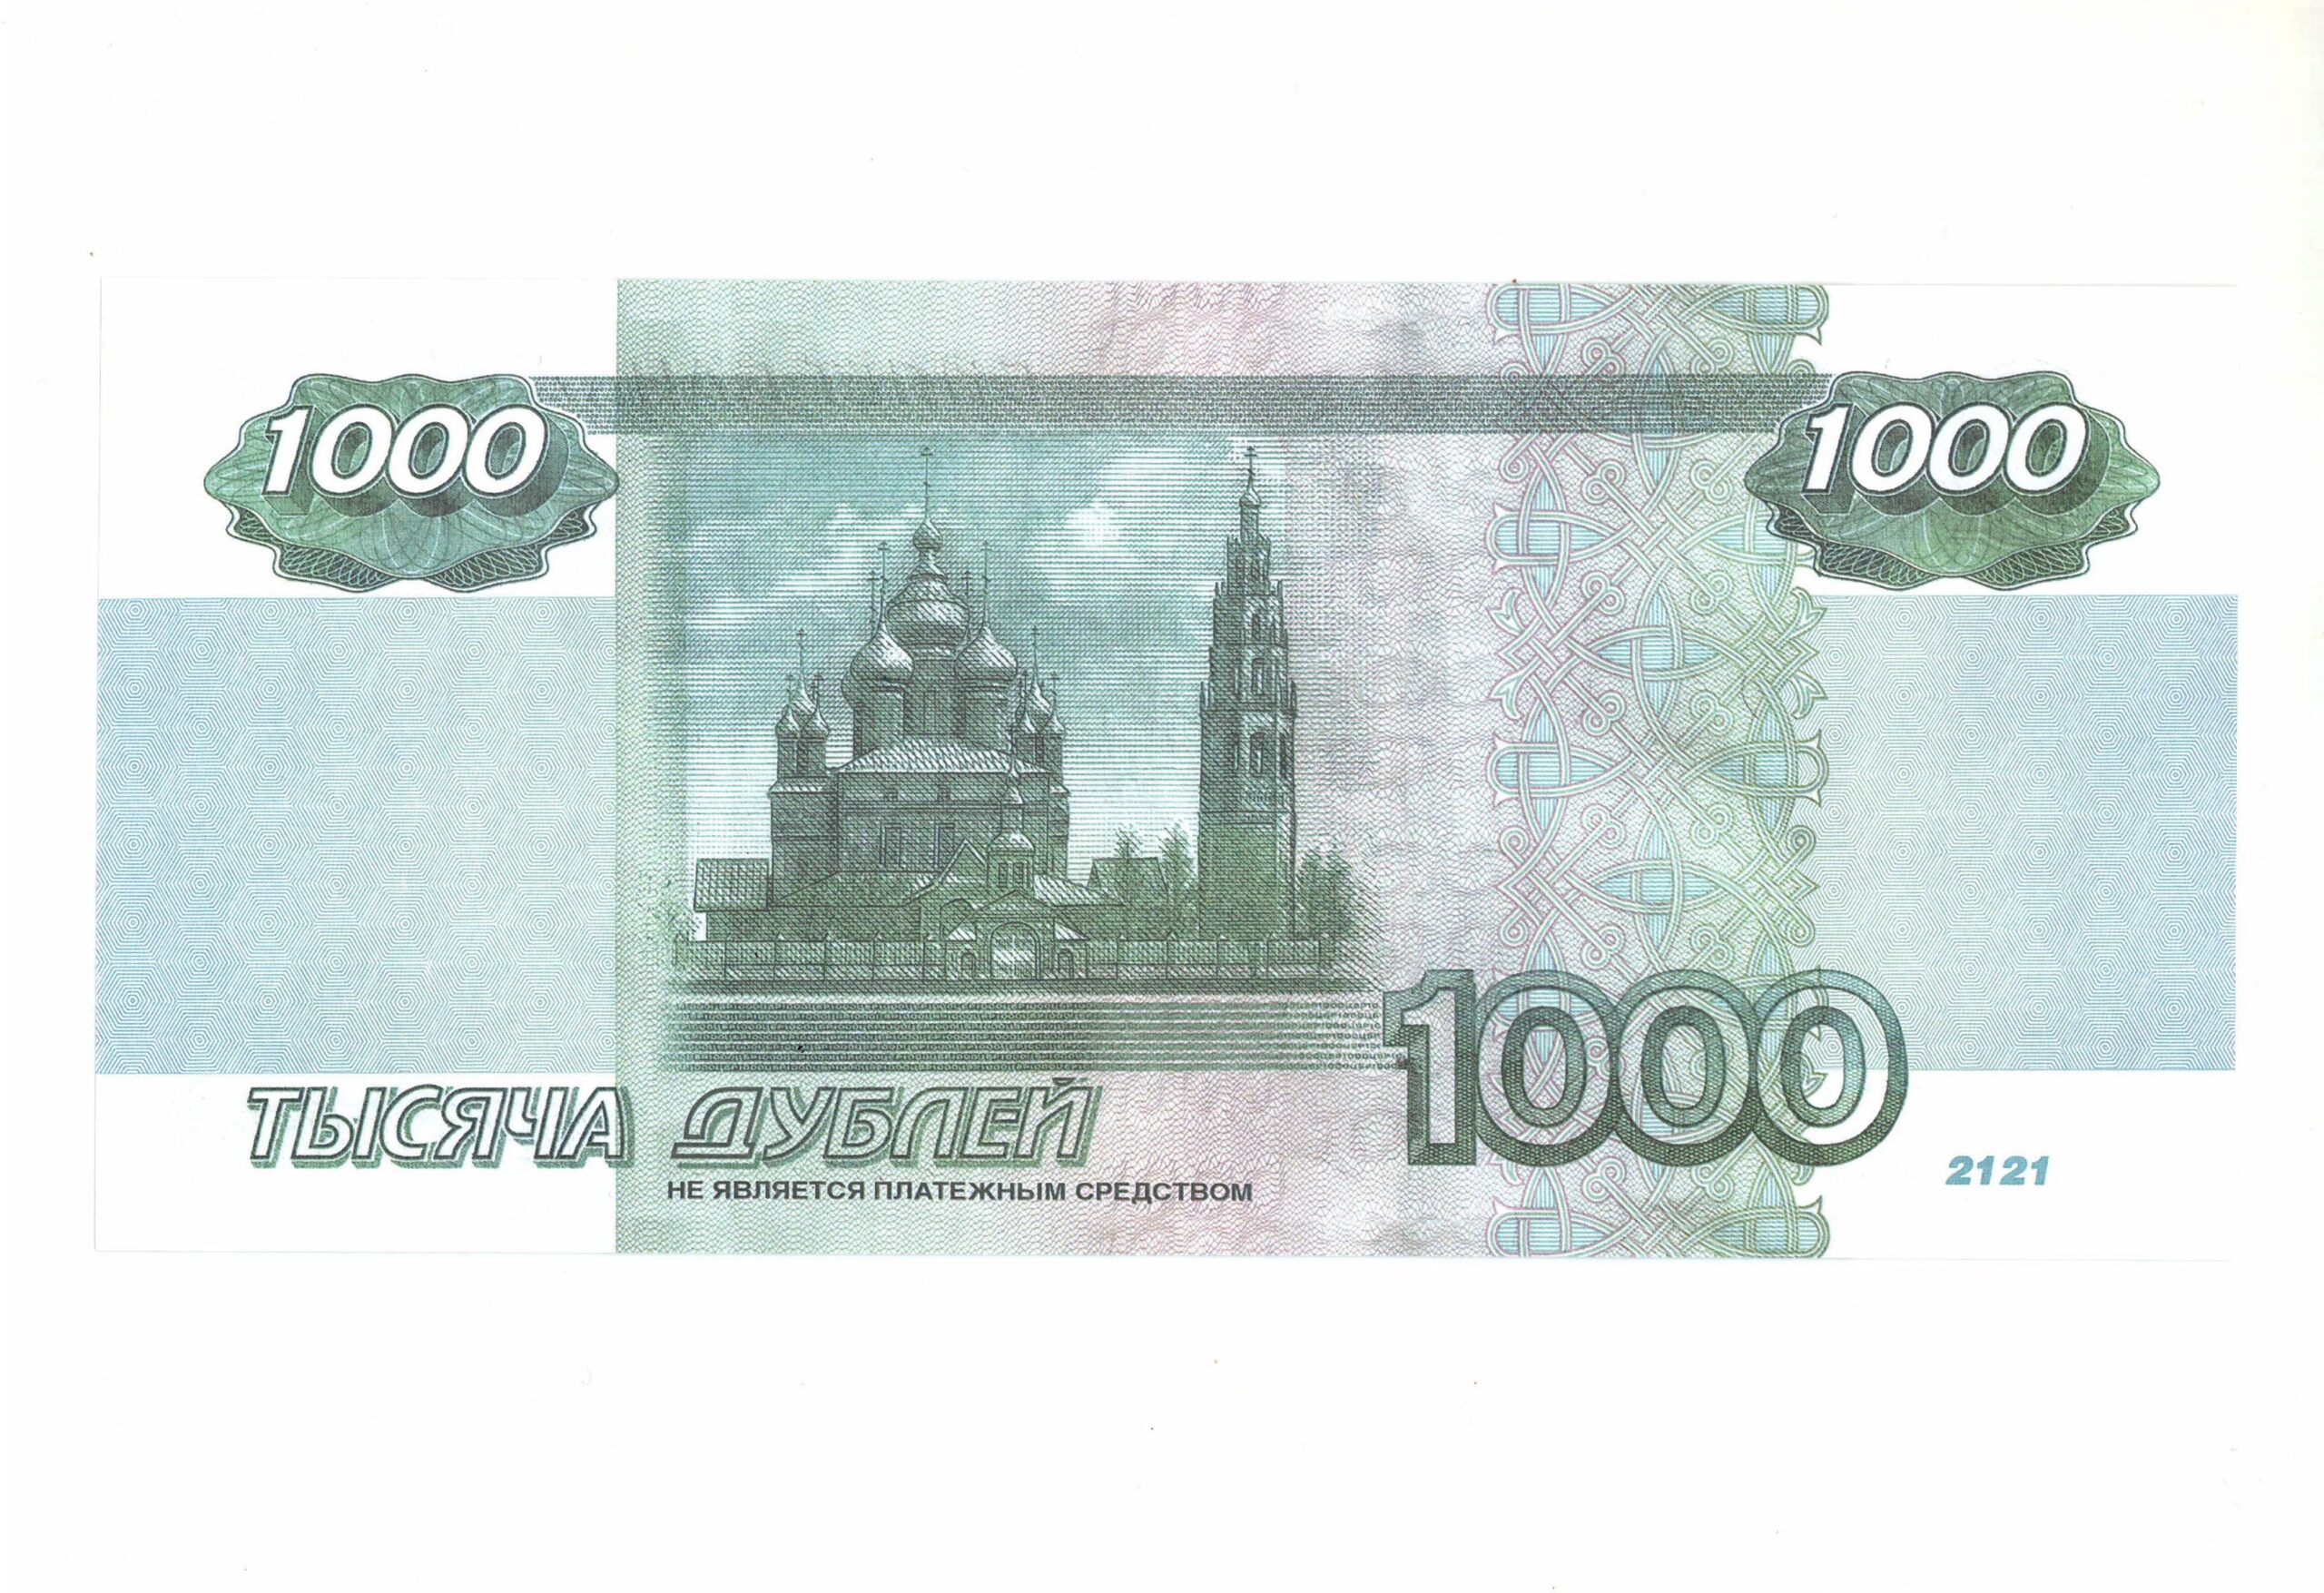 1000 рублях в г. Купюра 1000 рублей. Банкнота 1000 рублей. Новая купюра 1000. Изображение тысячи рублей.